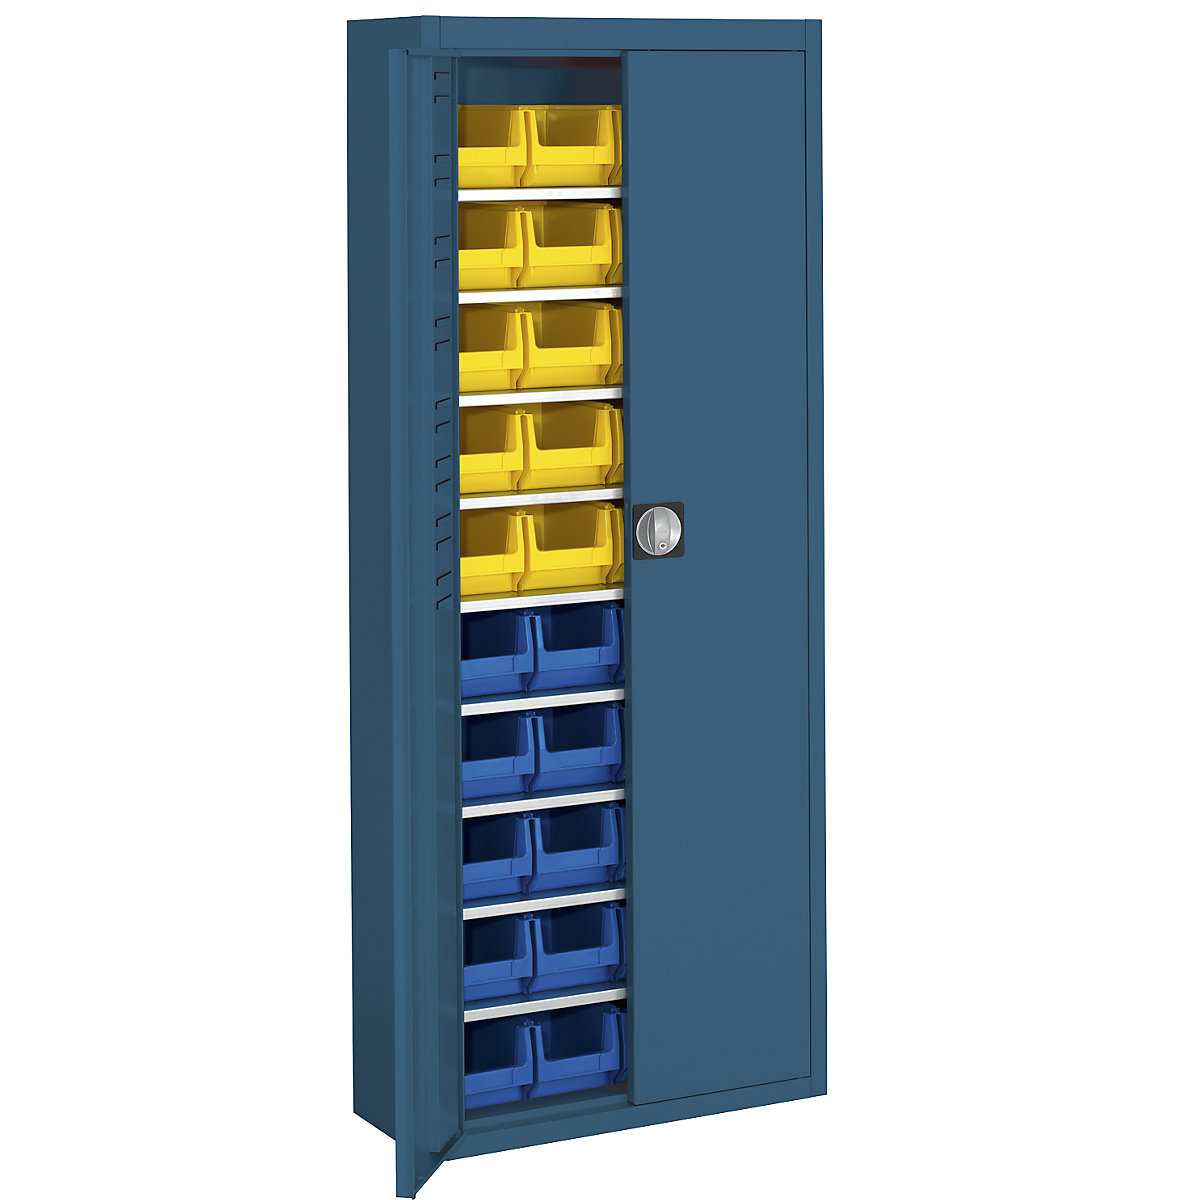 Skladová skříň s přepravkami s viditelným obsahem – mauser, v x š x h 1740 x 680 x 280 mm, jednobarevné, modrá, 40 přepravek-1